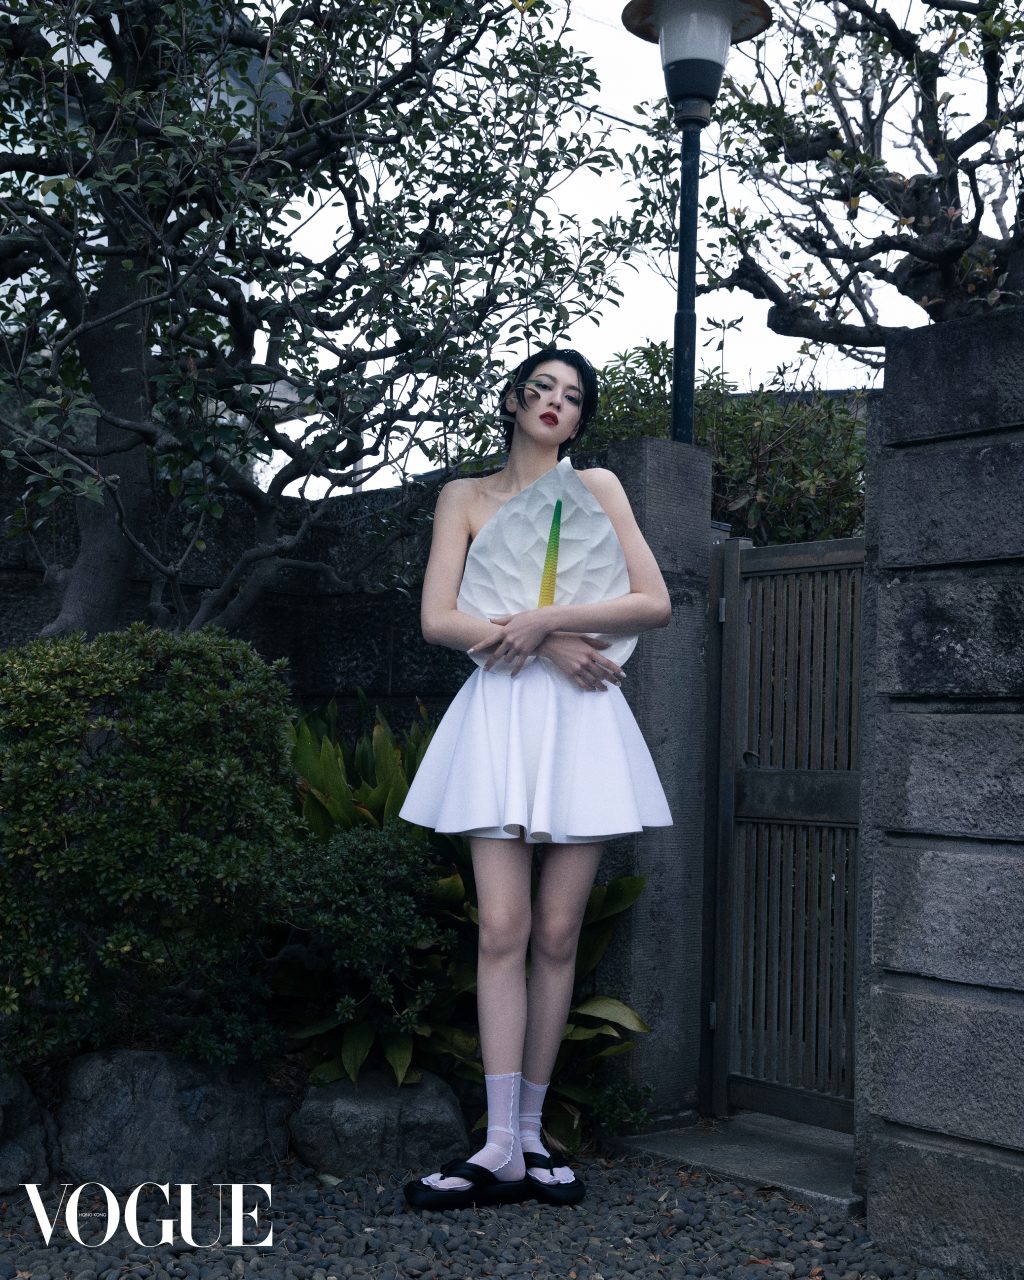 Japanese Actress Ayaka Miyoshi Stars On Vogue Hong Kong's April